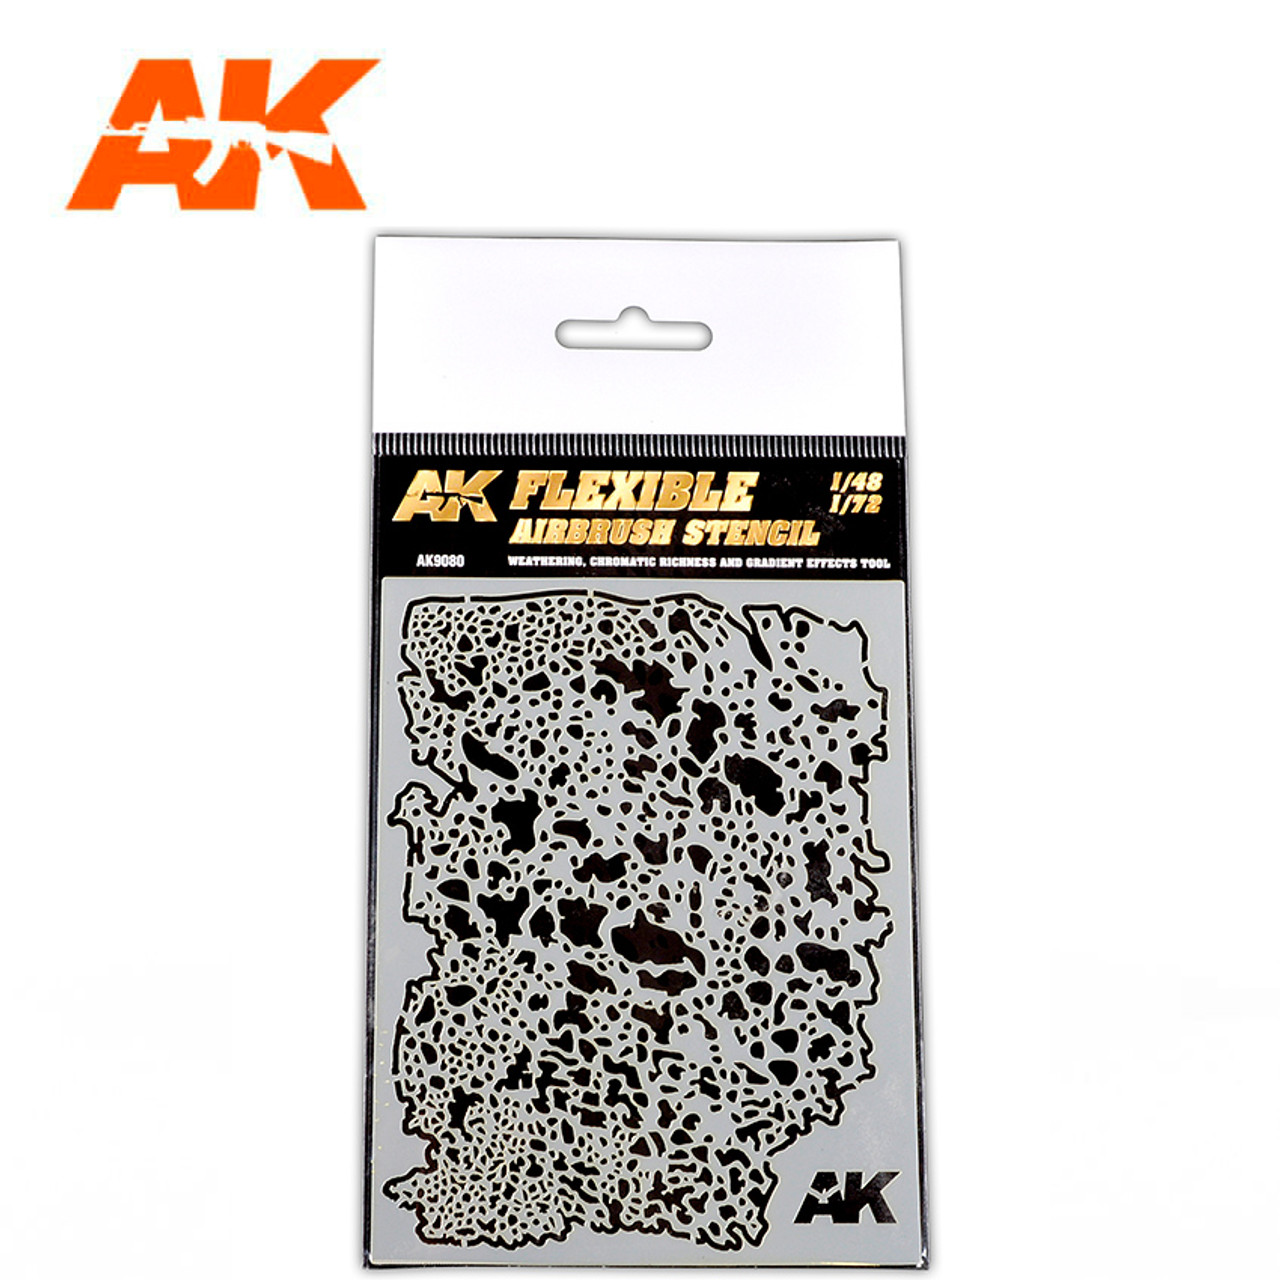 AK-Interactive: Flexible Airbrush Stencil (1/48, 1/72) - AK9080